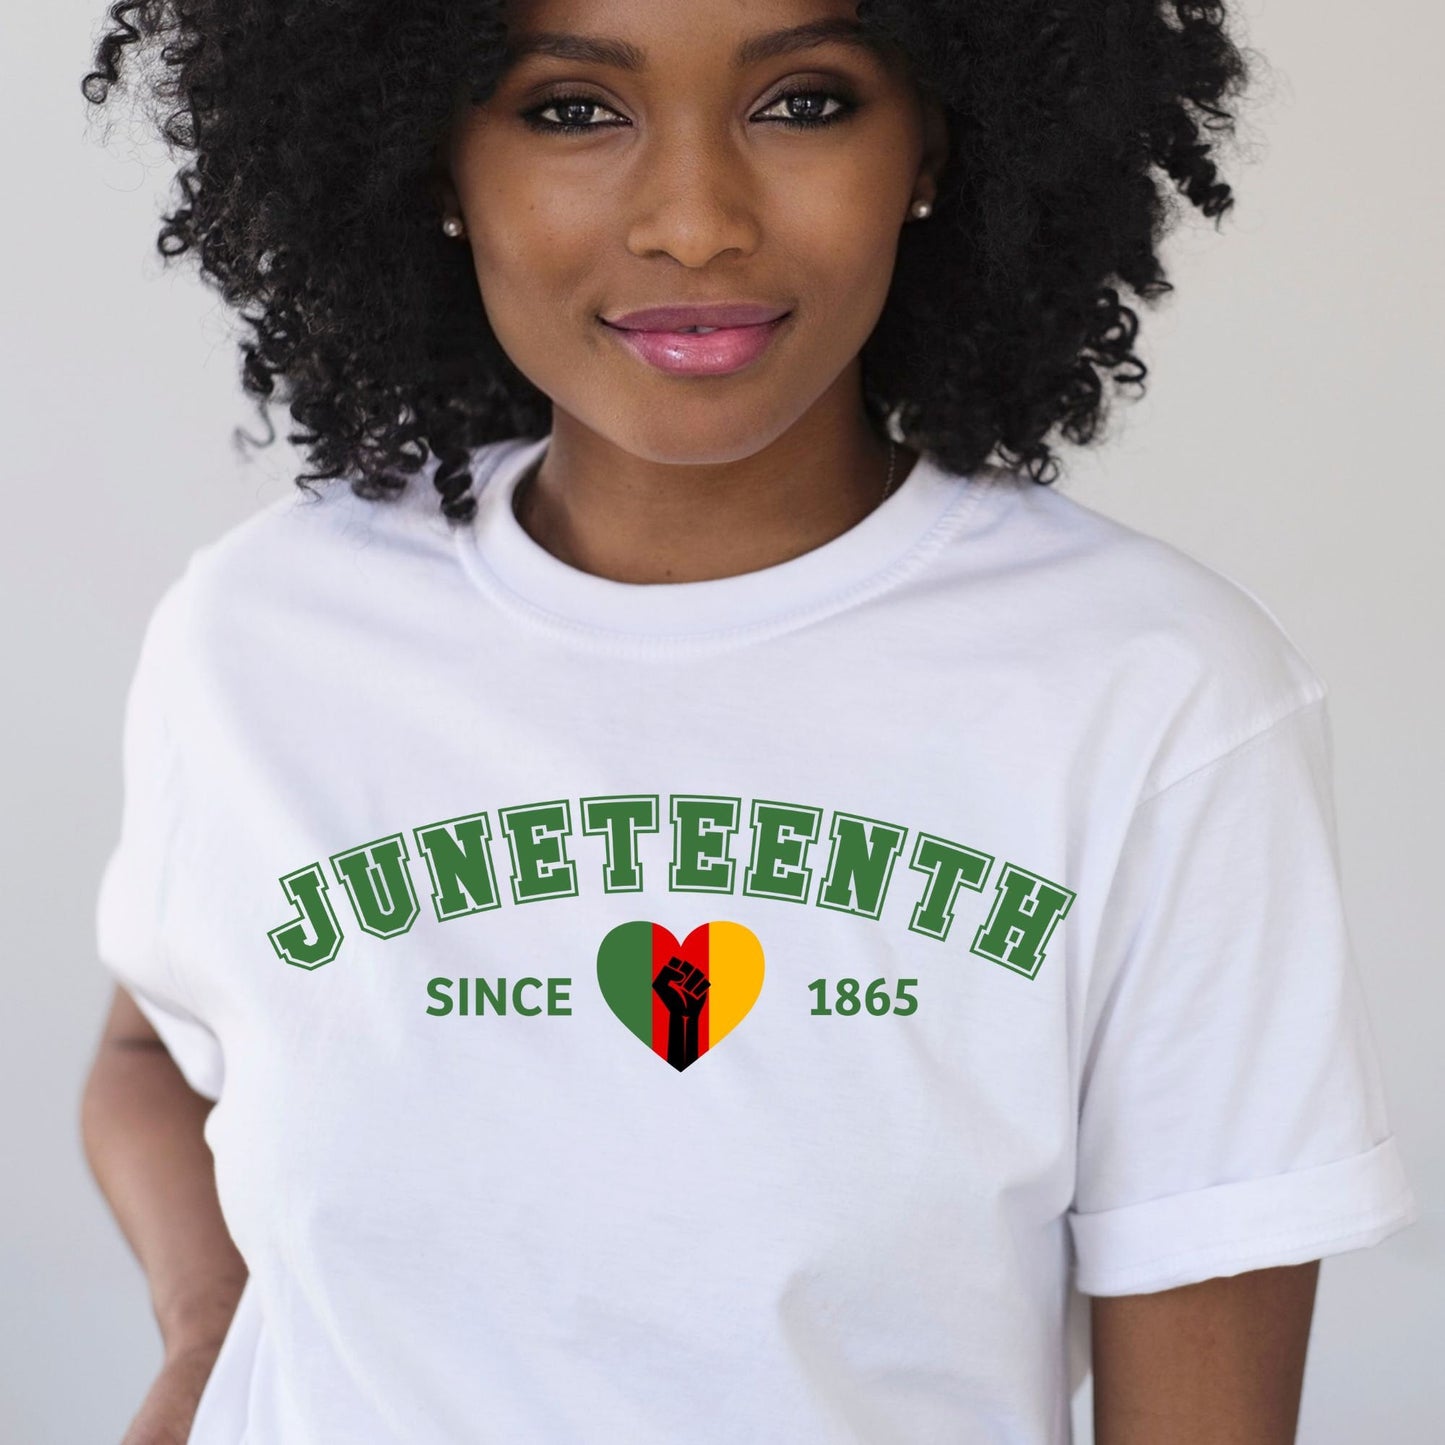 Juneteenth Since 1865 T-Shirt